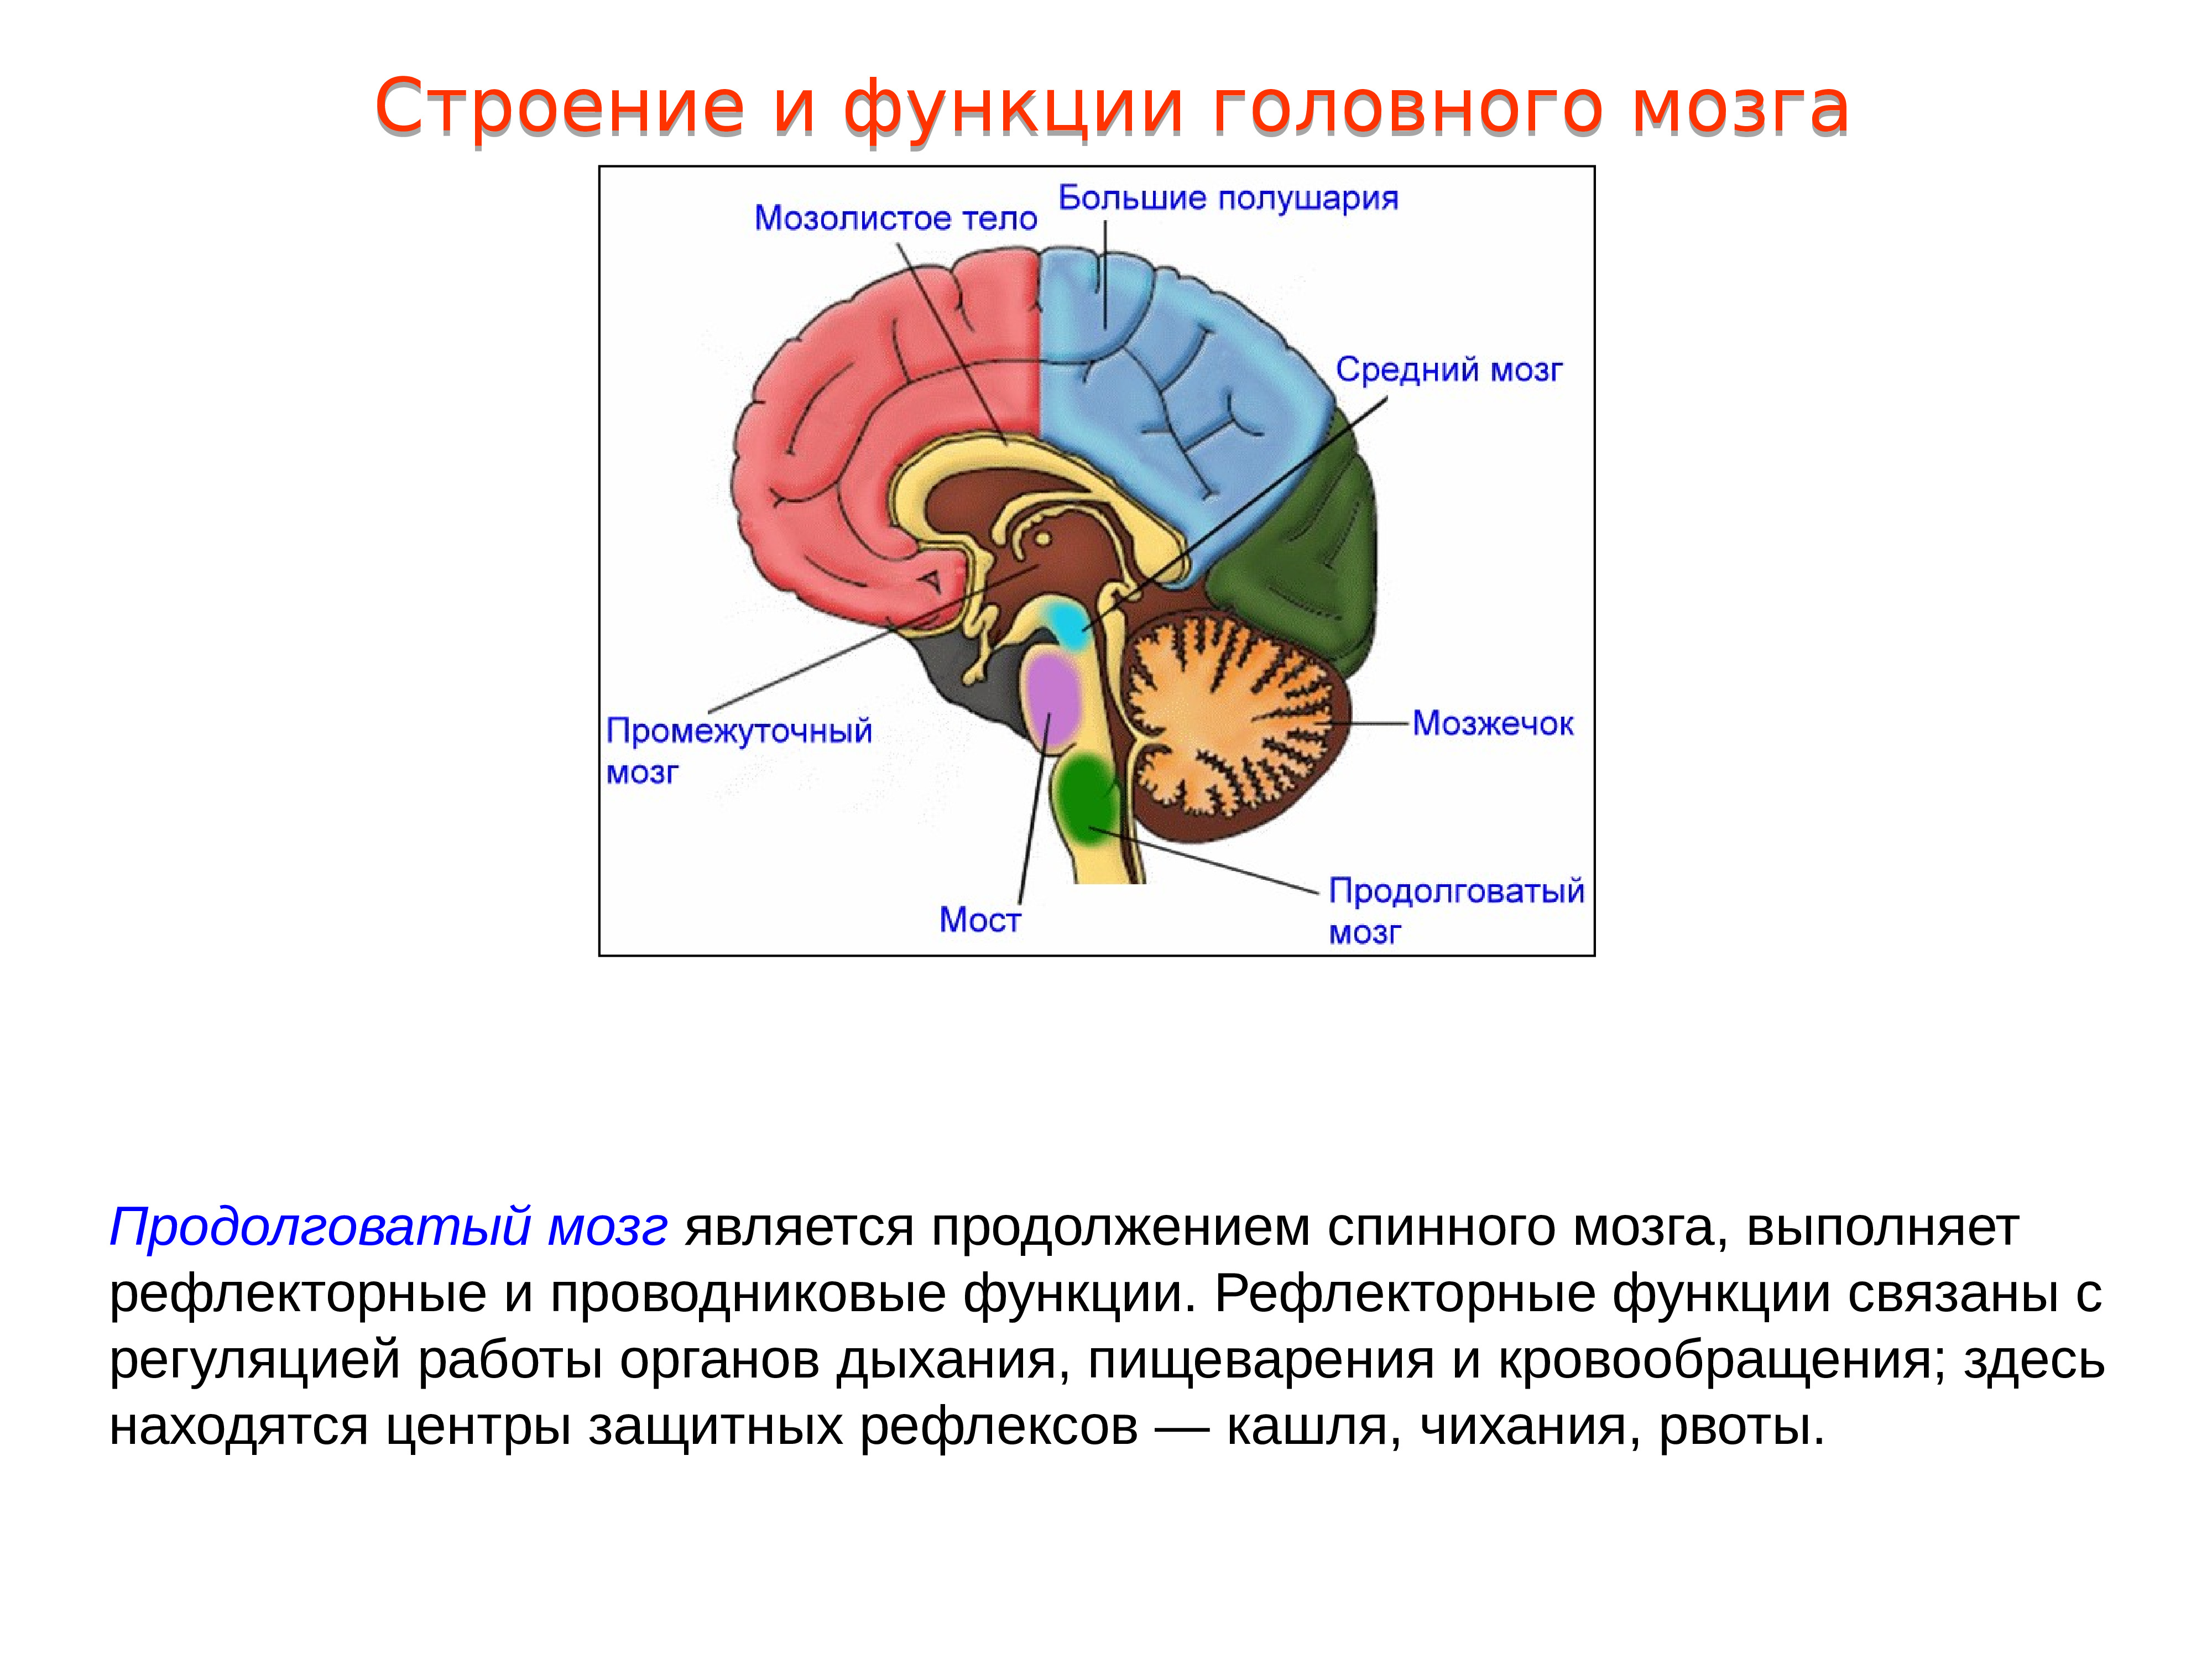 Задний отдел головного мозга состоит. Структура головного мозг задний мозг. Проводниковая функция мозжечка. Головной мозг, отделы. Строение и функции продолговатого мозга. 1. Промежуточный мозг: строение, функции.